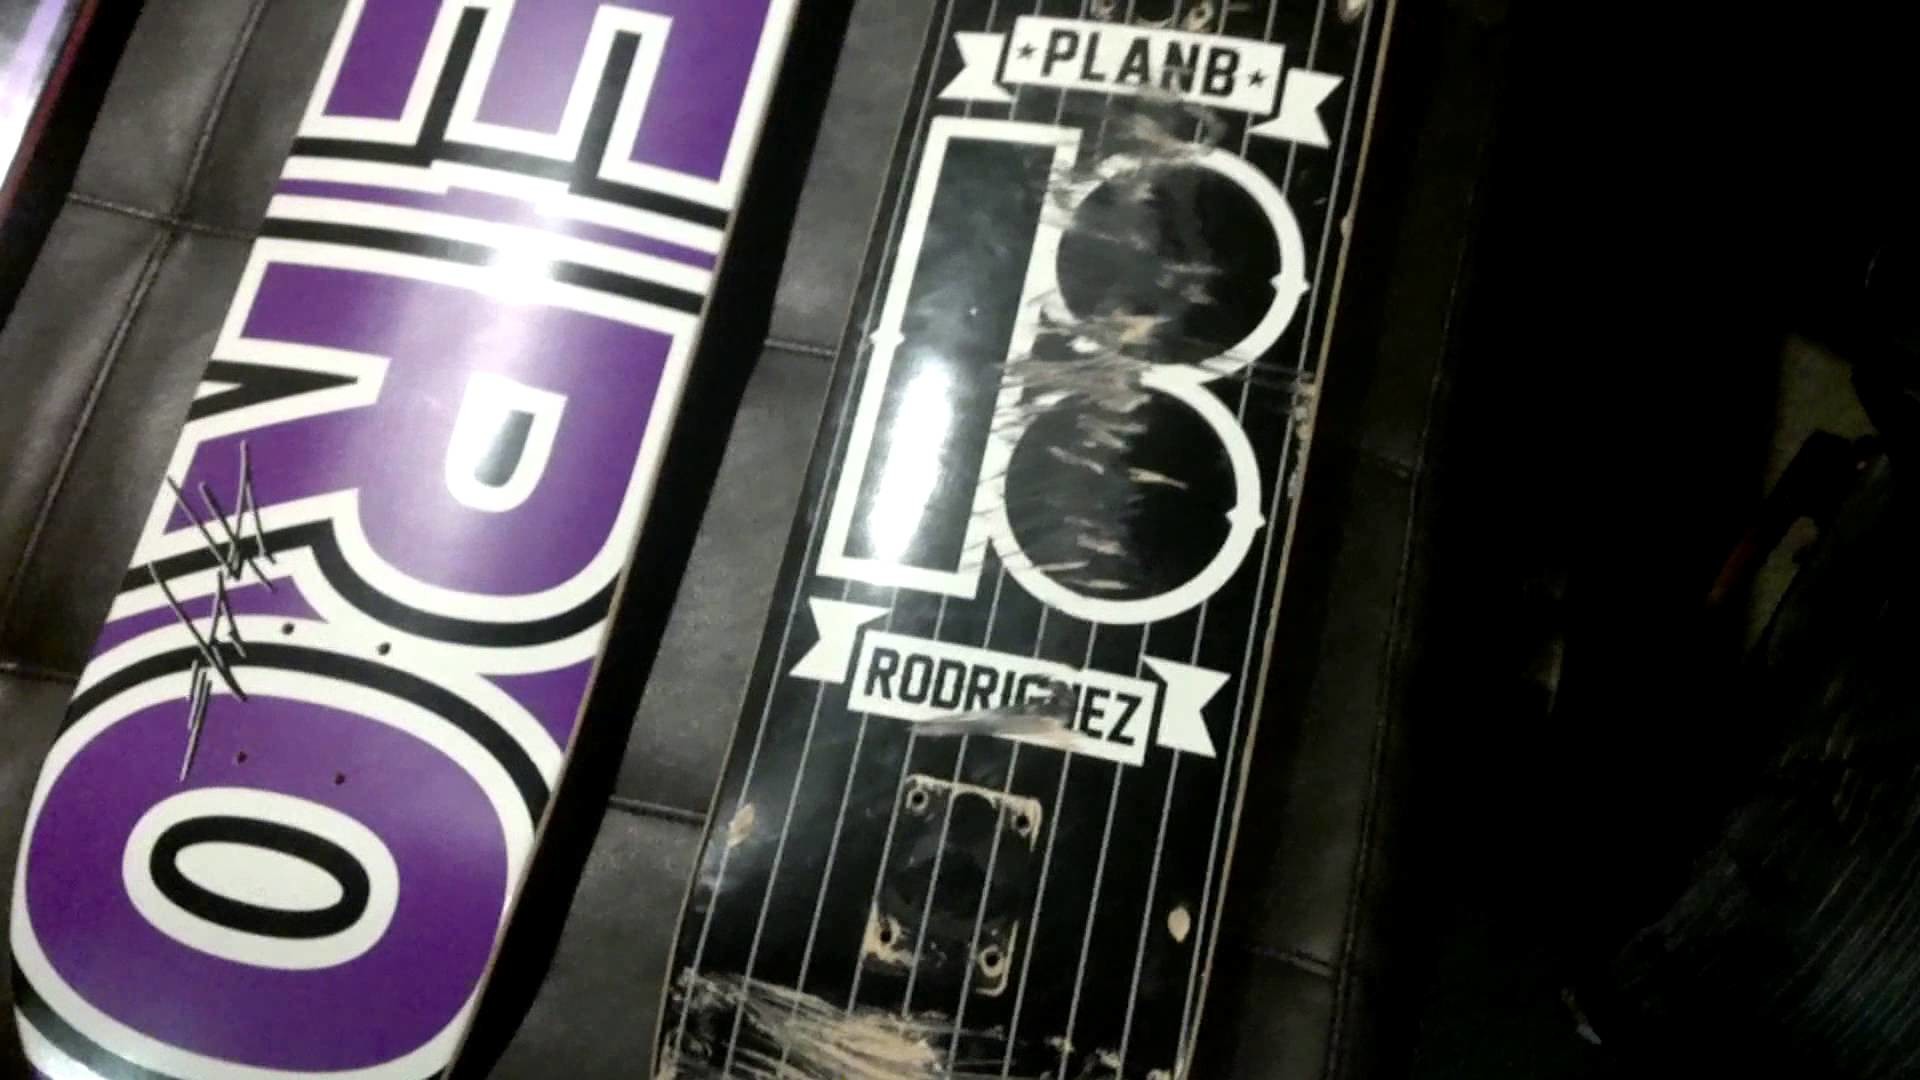 1920x1080 Plan B skateboard review